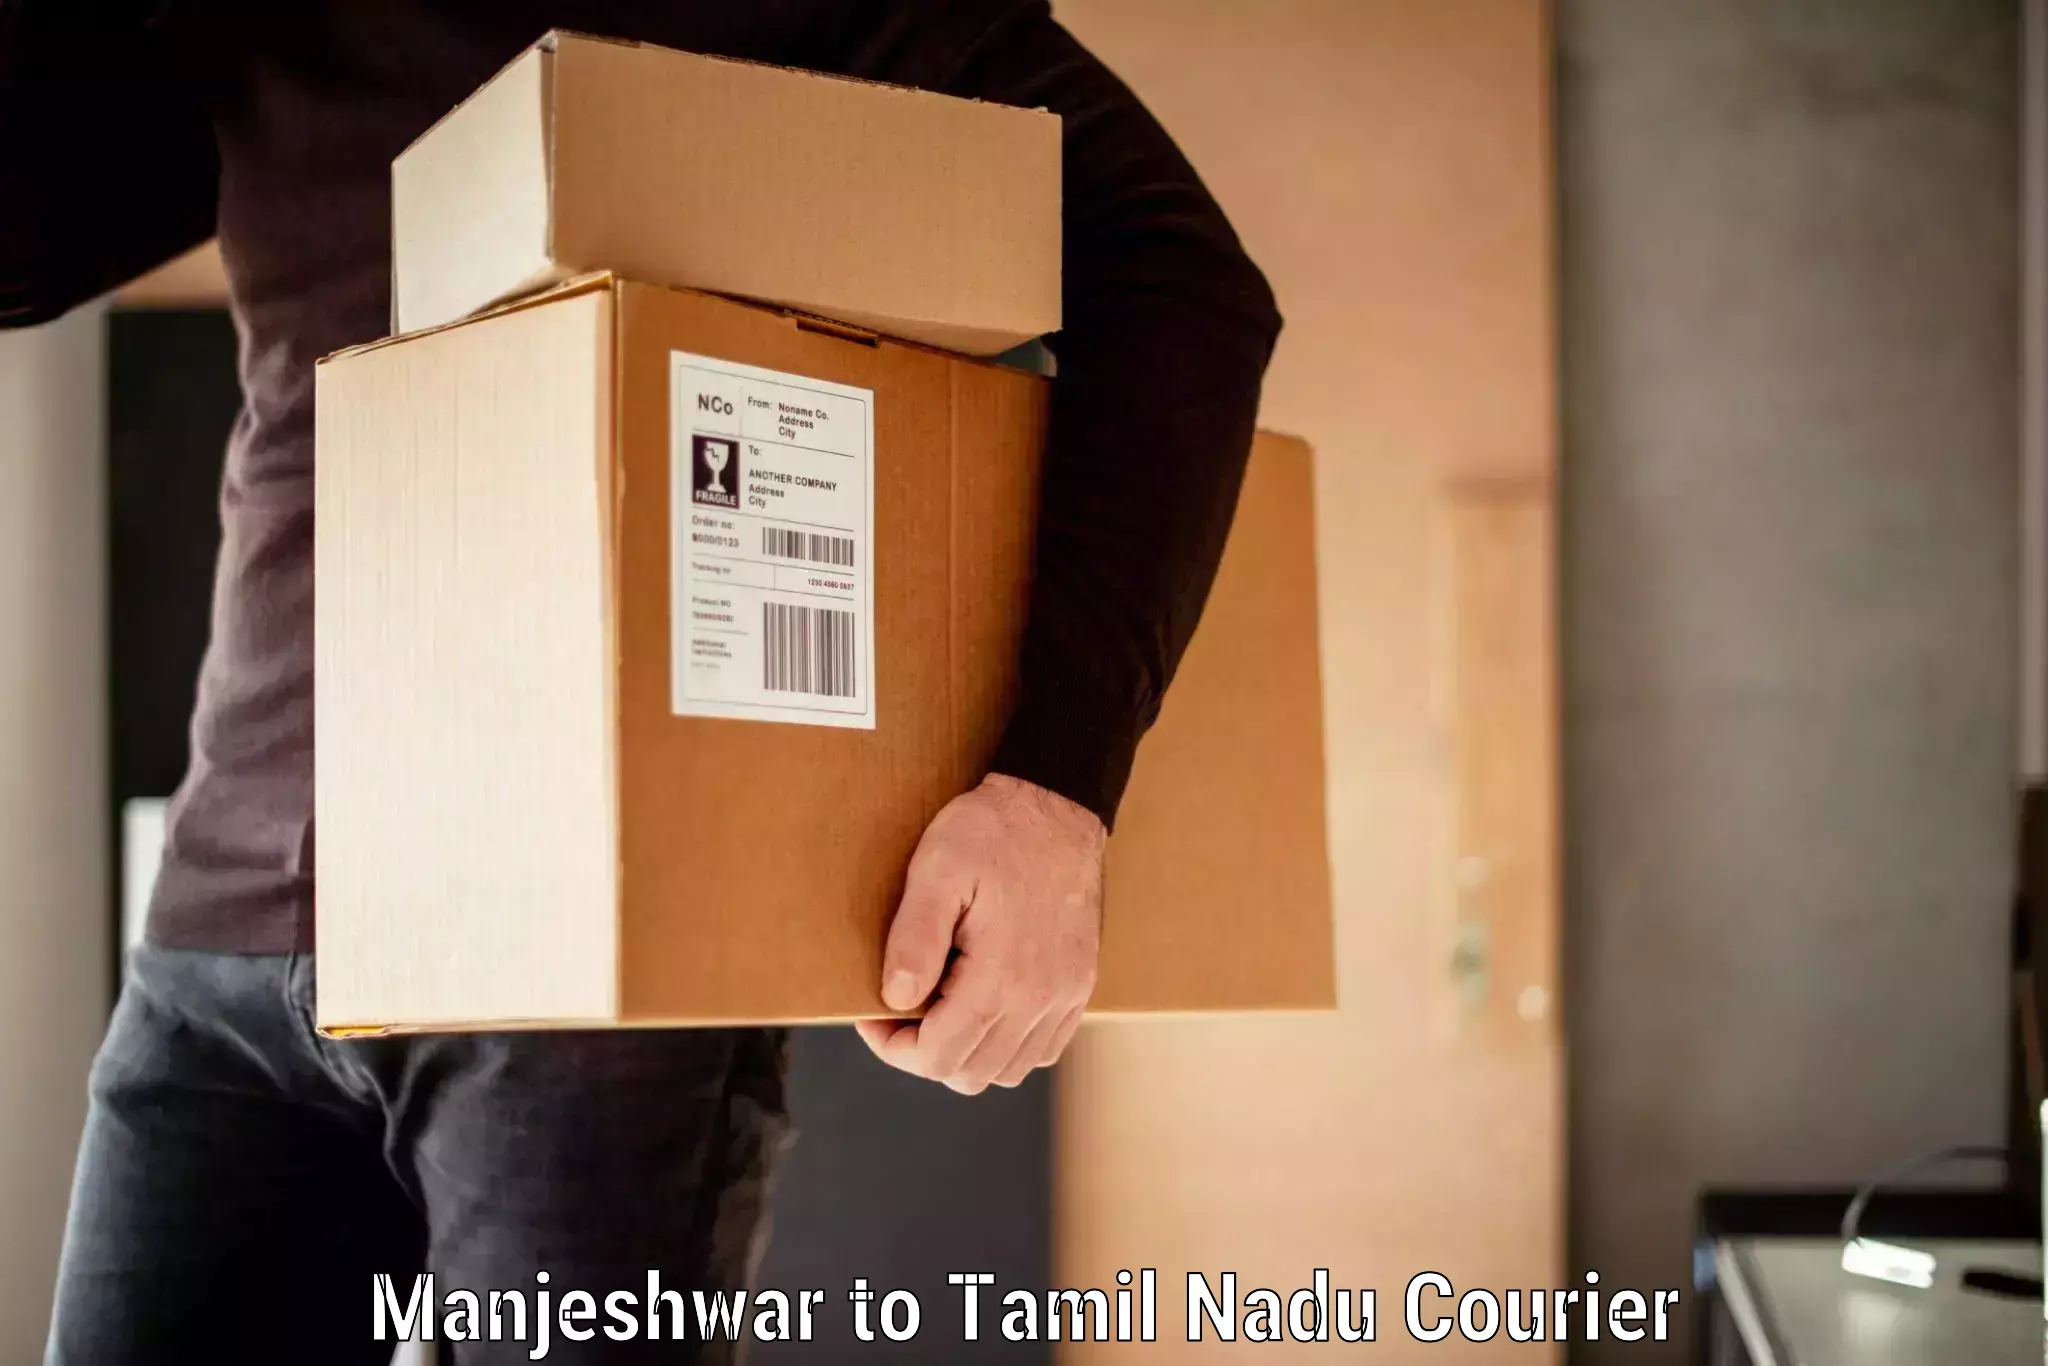 Baggage shipping schedule Manjeshwar to Memalur